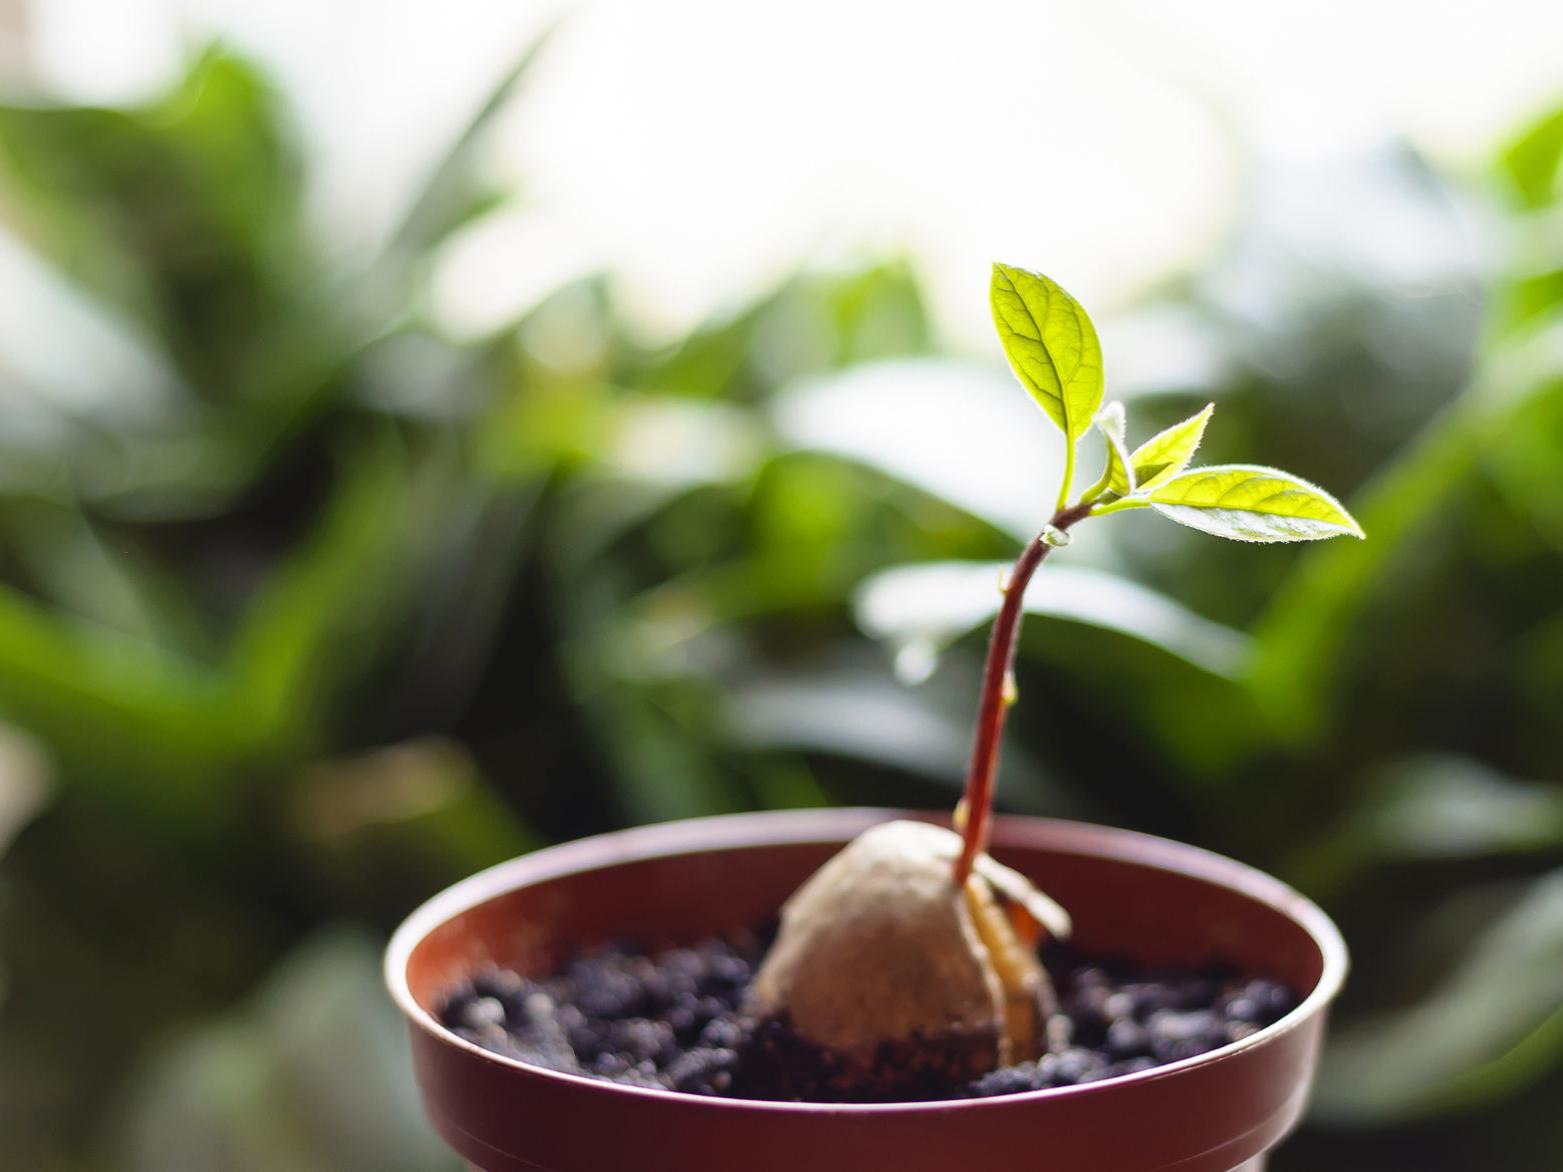 Come piantare i semi di avocado in un vaso?